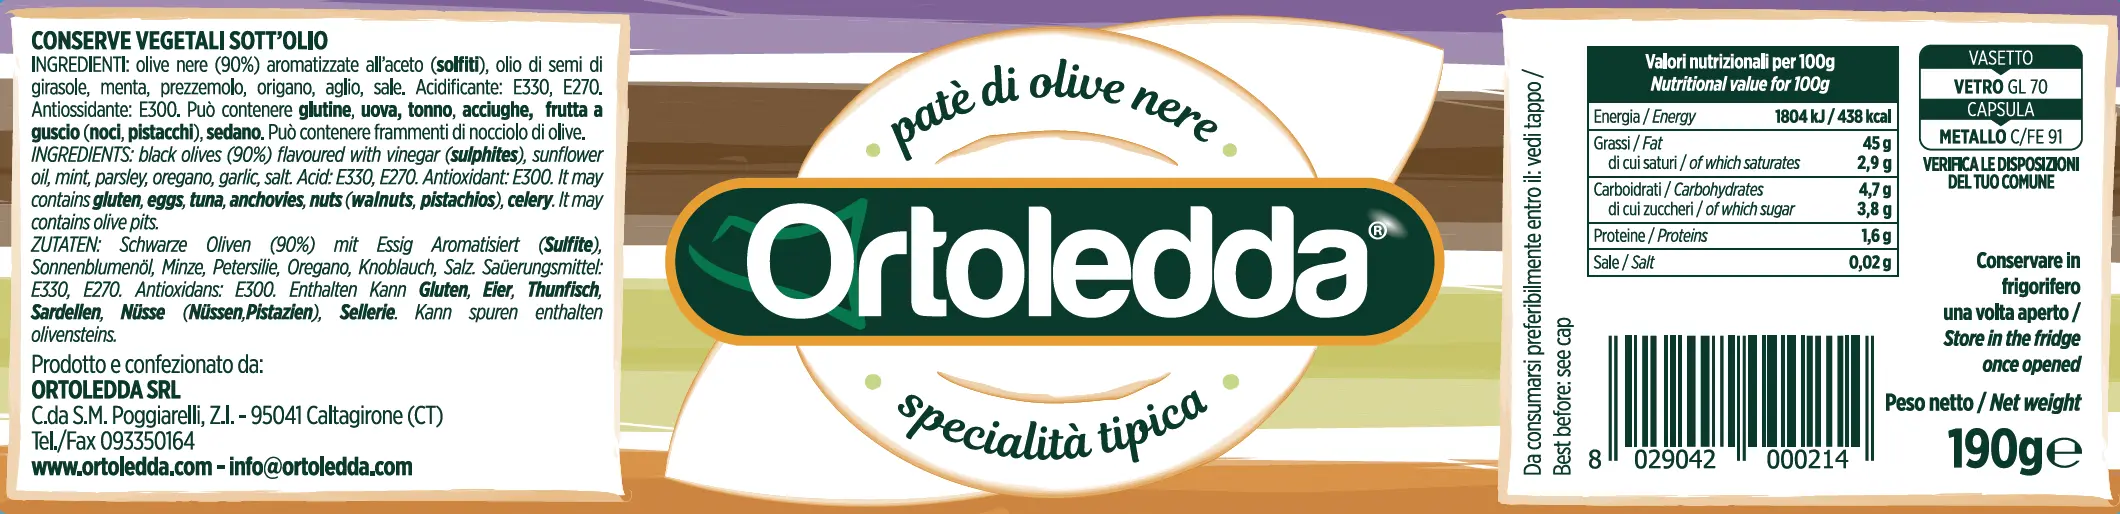 Pate Di Olive Nere Ortoledda Agrisicilia